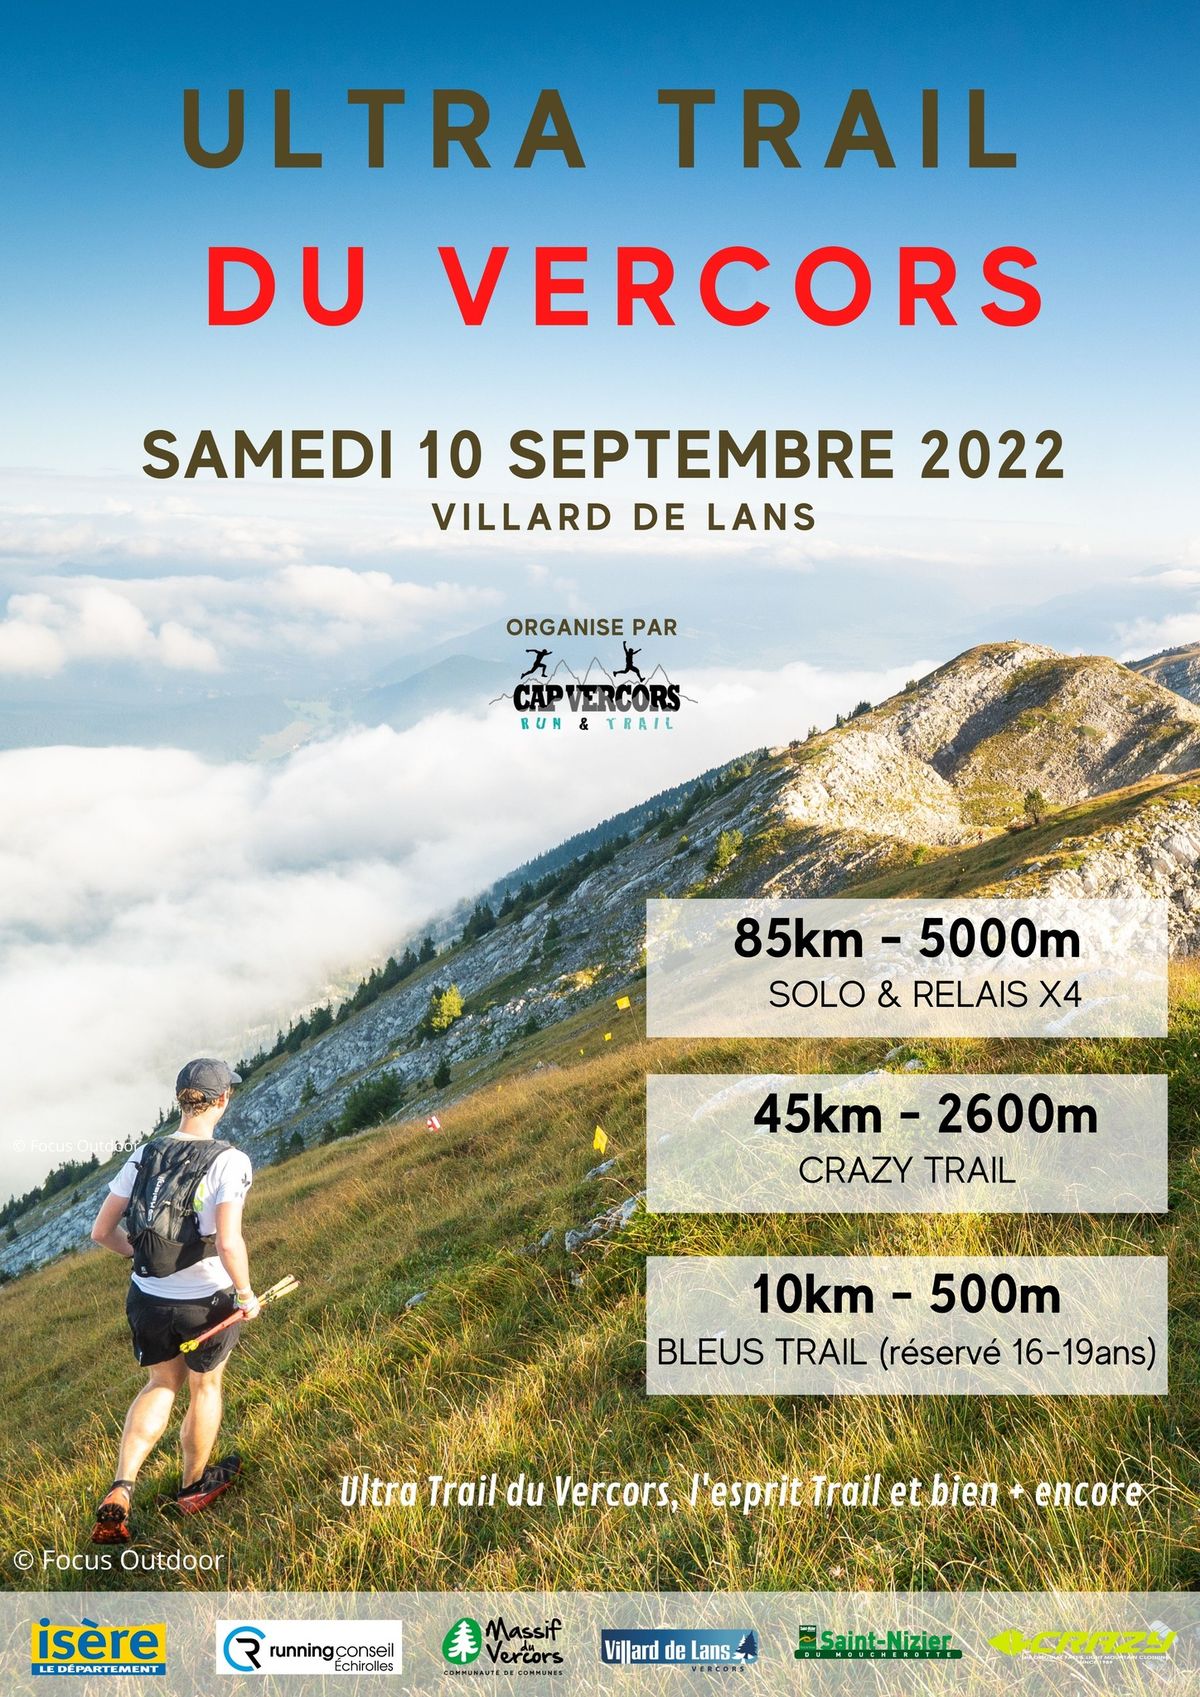 Ultra Trail du Vercors 2022